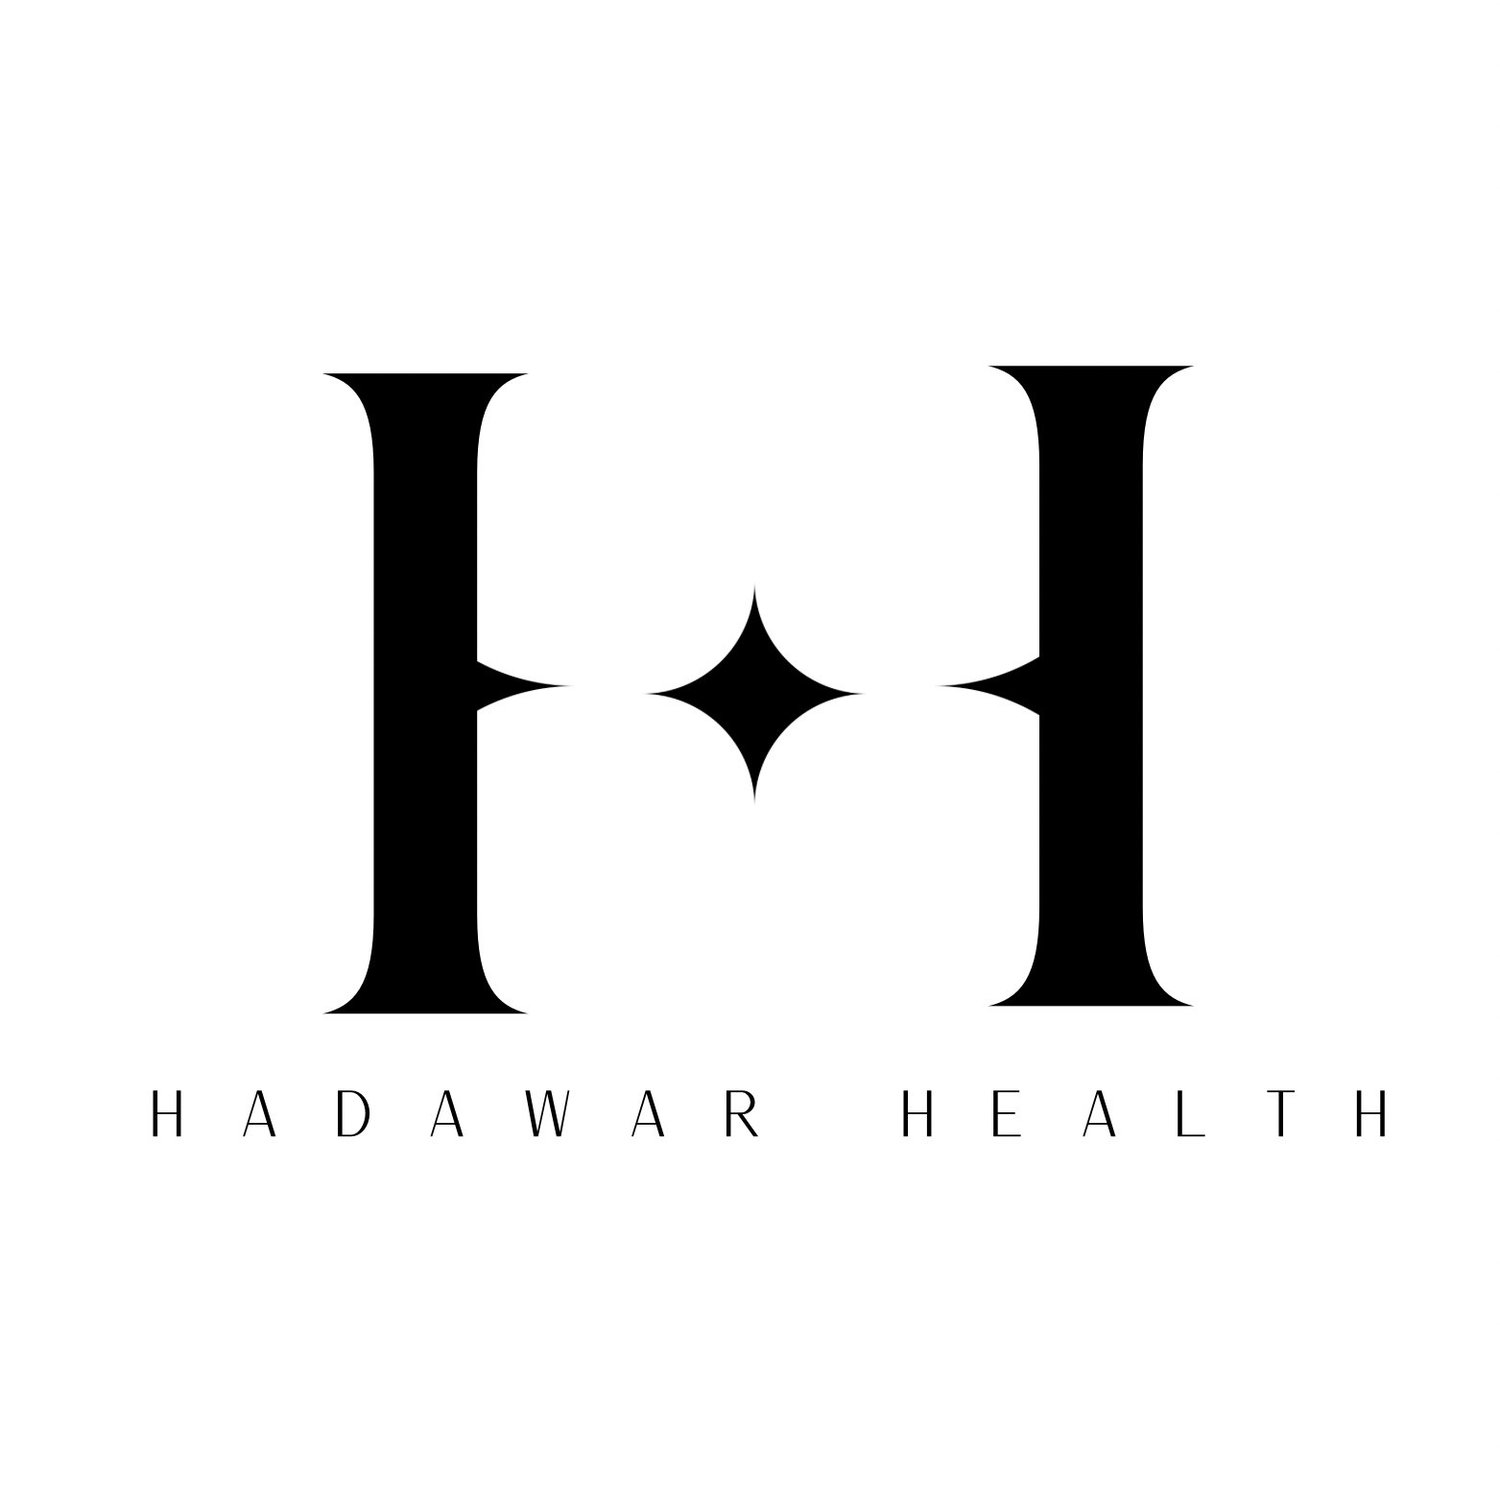 Hadawar Health